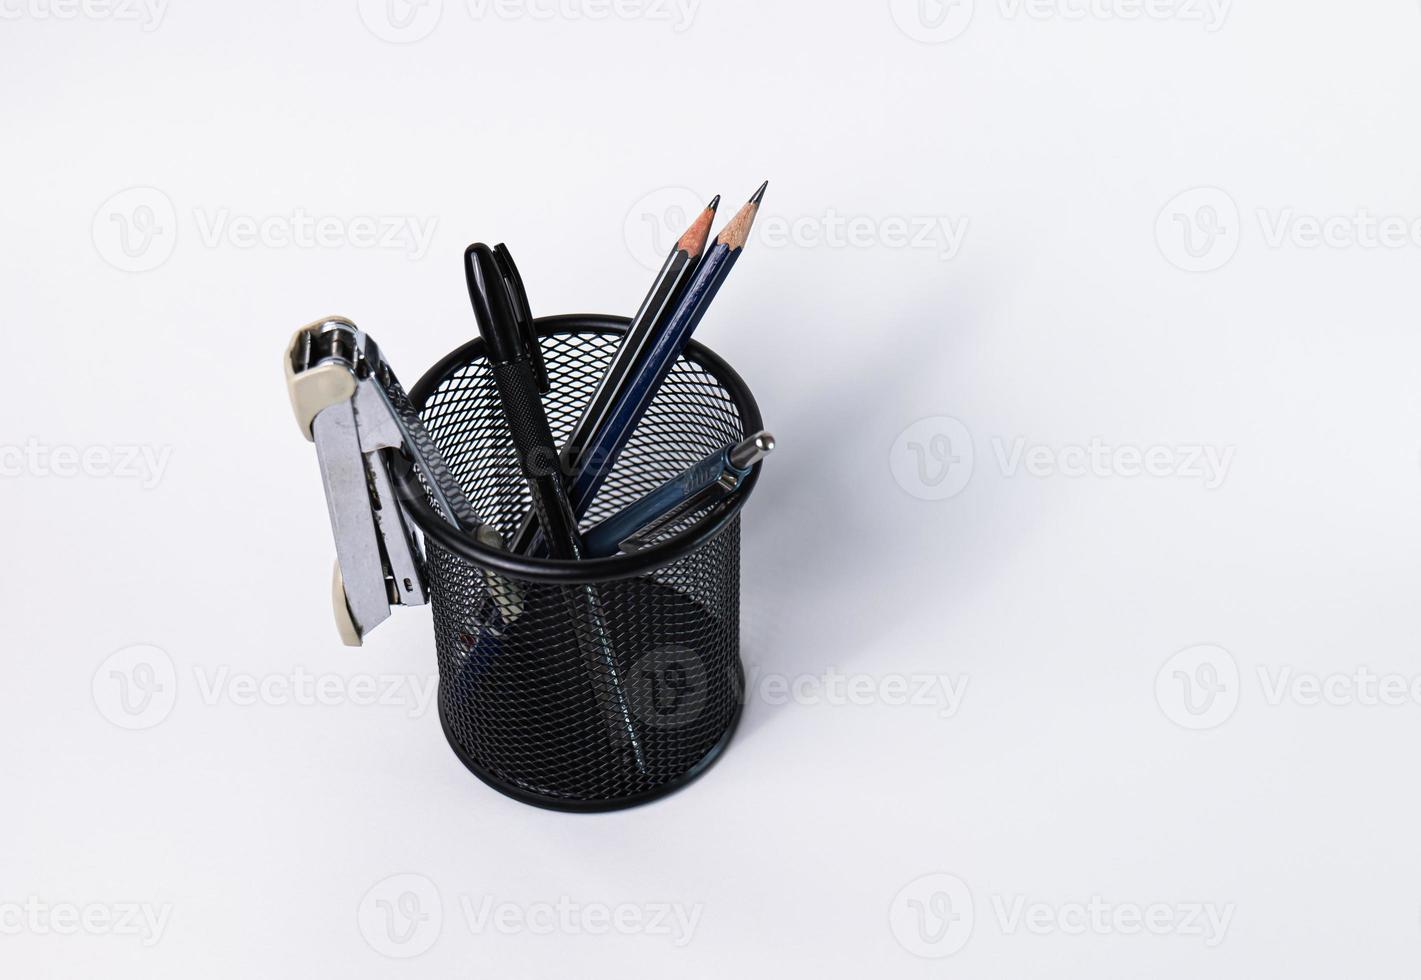 uma pequena cesta preta feita de aço redondo. pode ser usado para guardar material de escritório, incluindo canetas, lápis, grampeador, e ainda tem espaço para colocar mais coisas. no fundo branco há espaço de cópia. foto